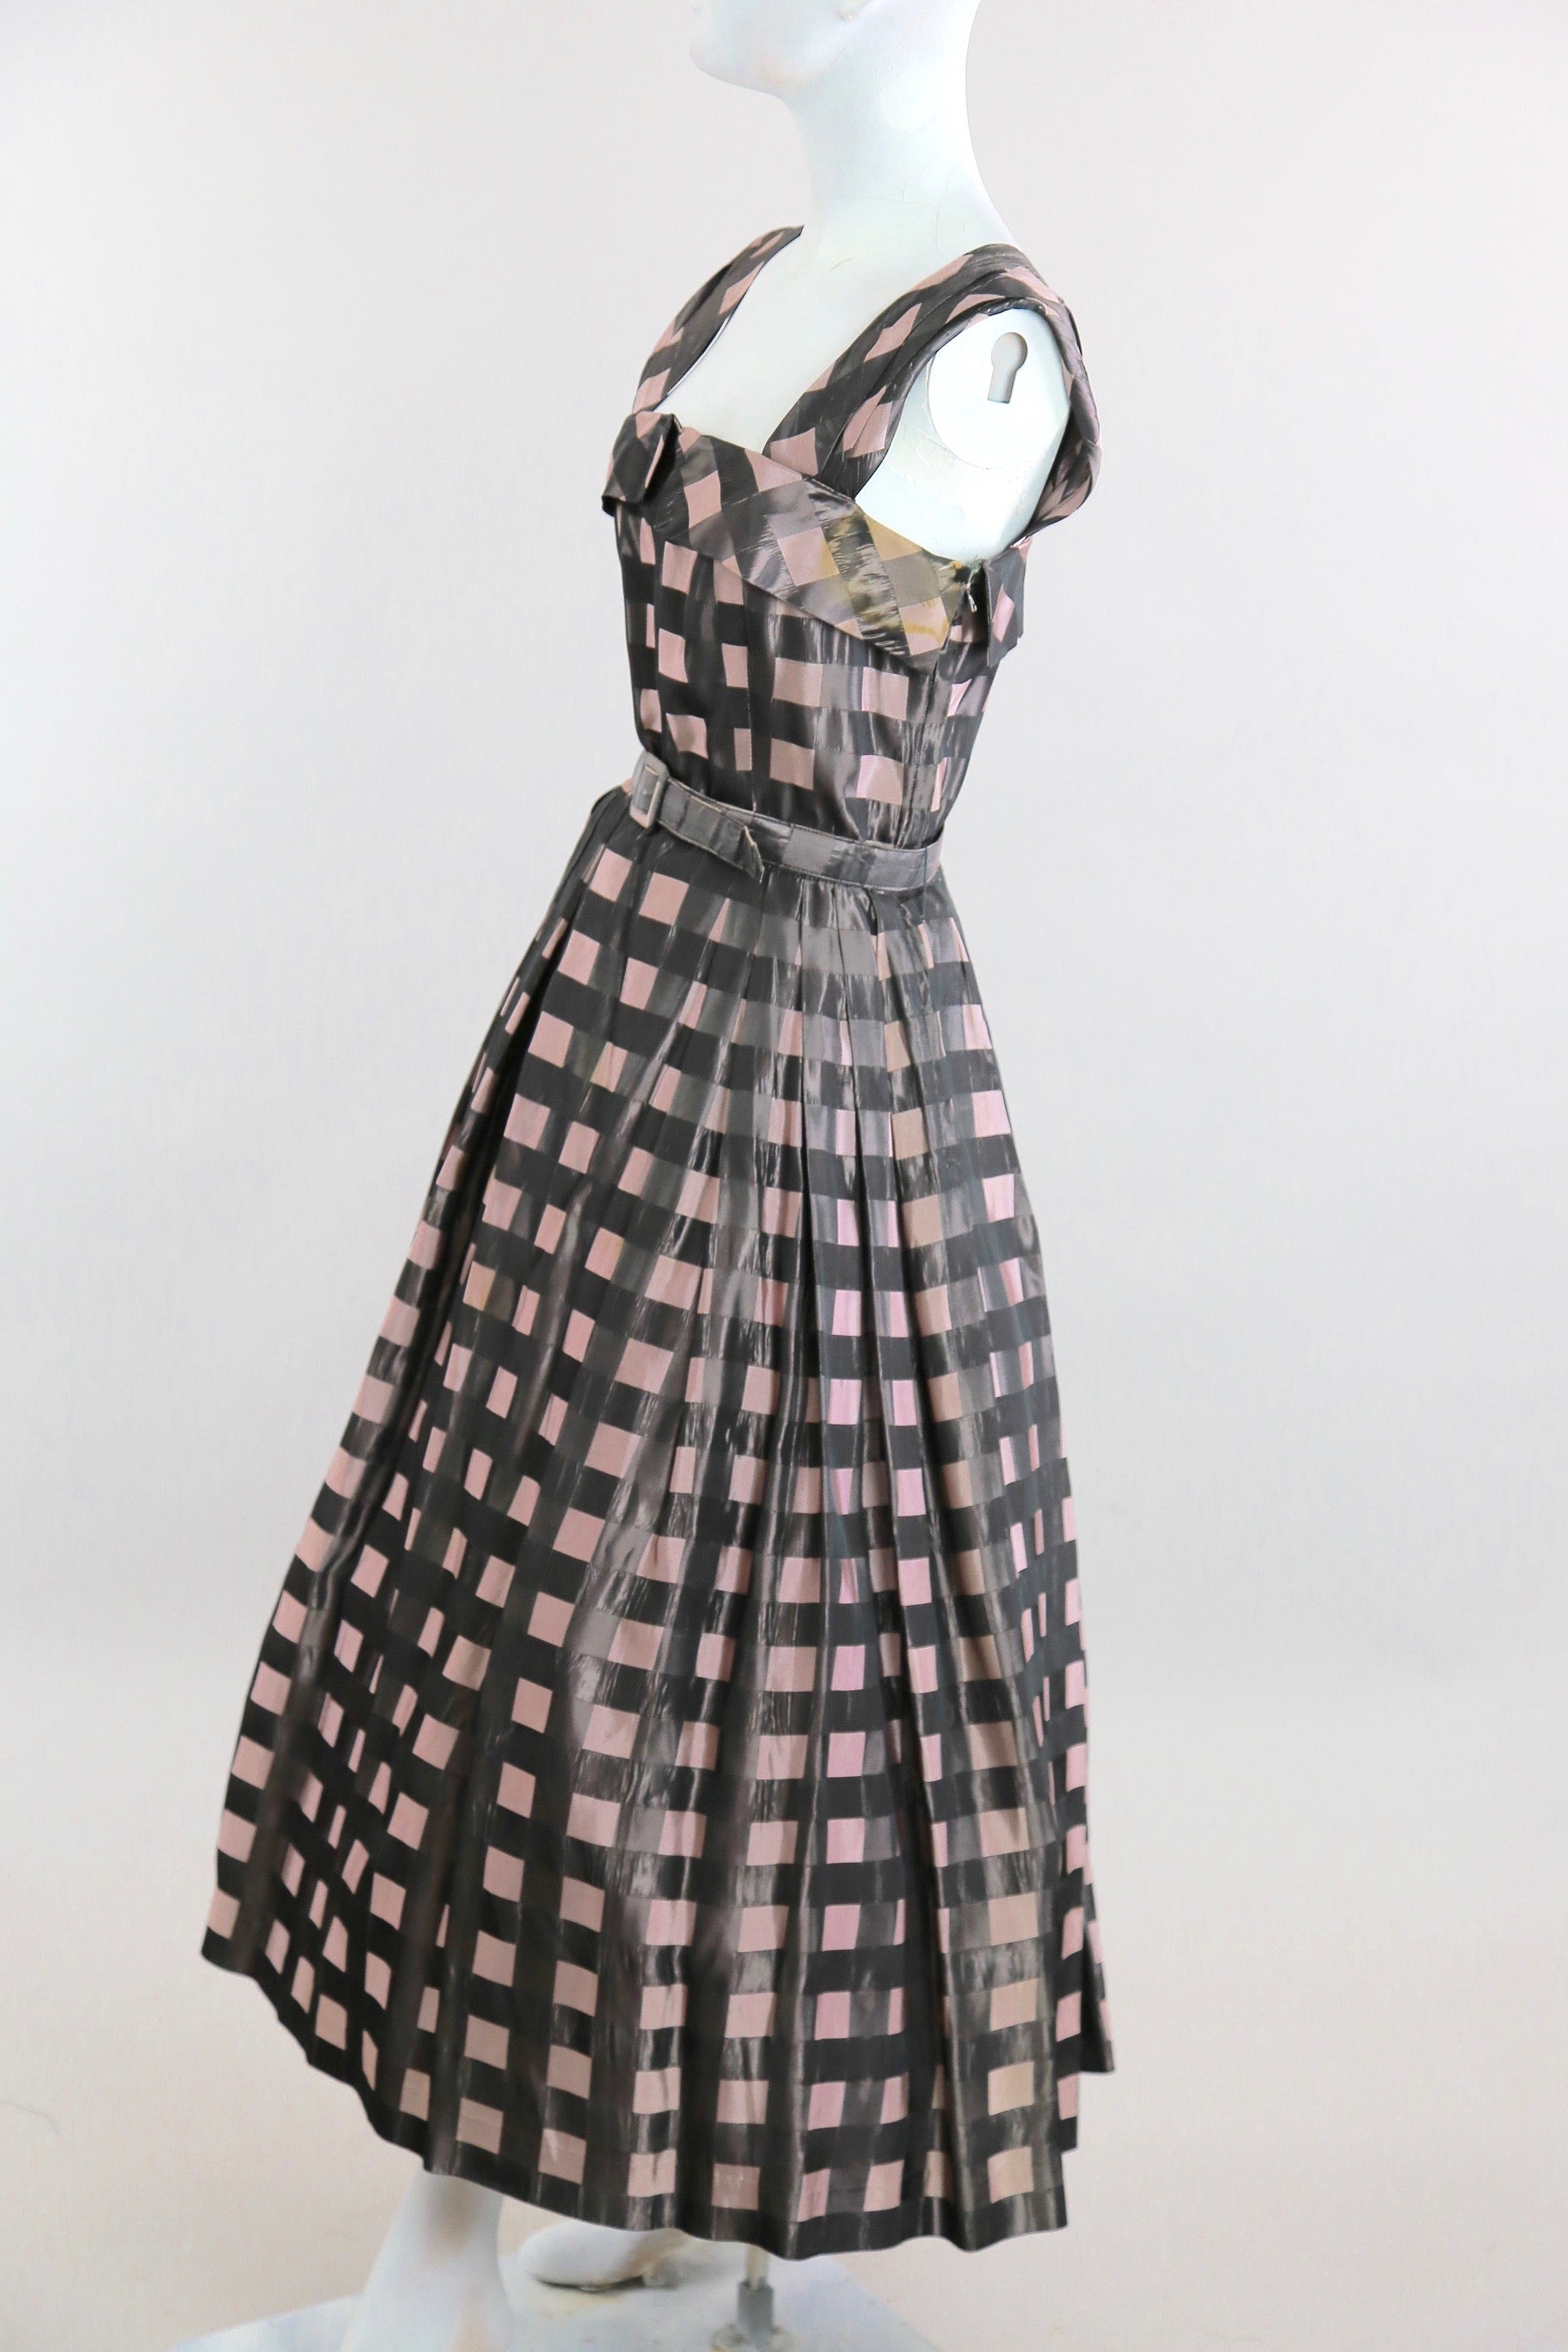 Vintage 50s 60s belted plaid pink black dress sundress swing dance rockabilly